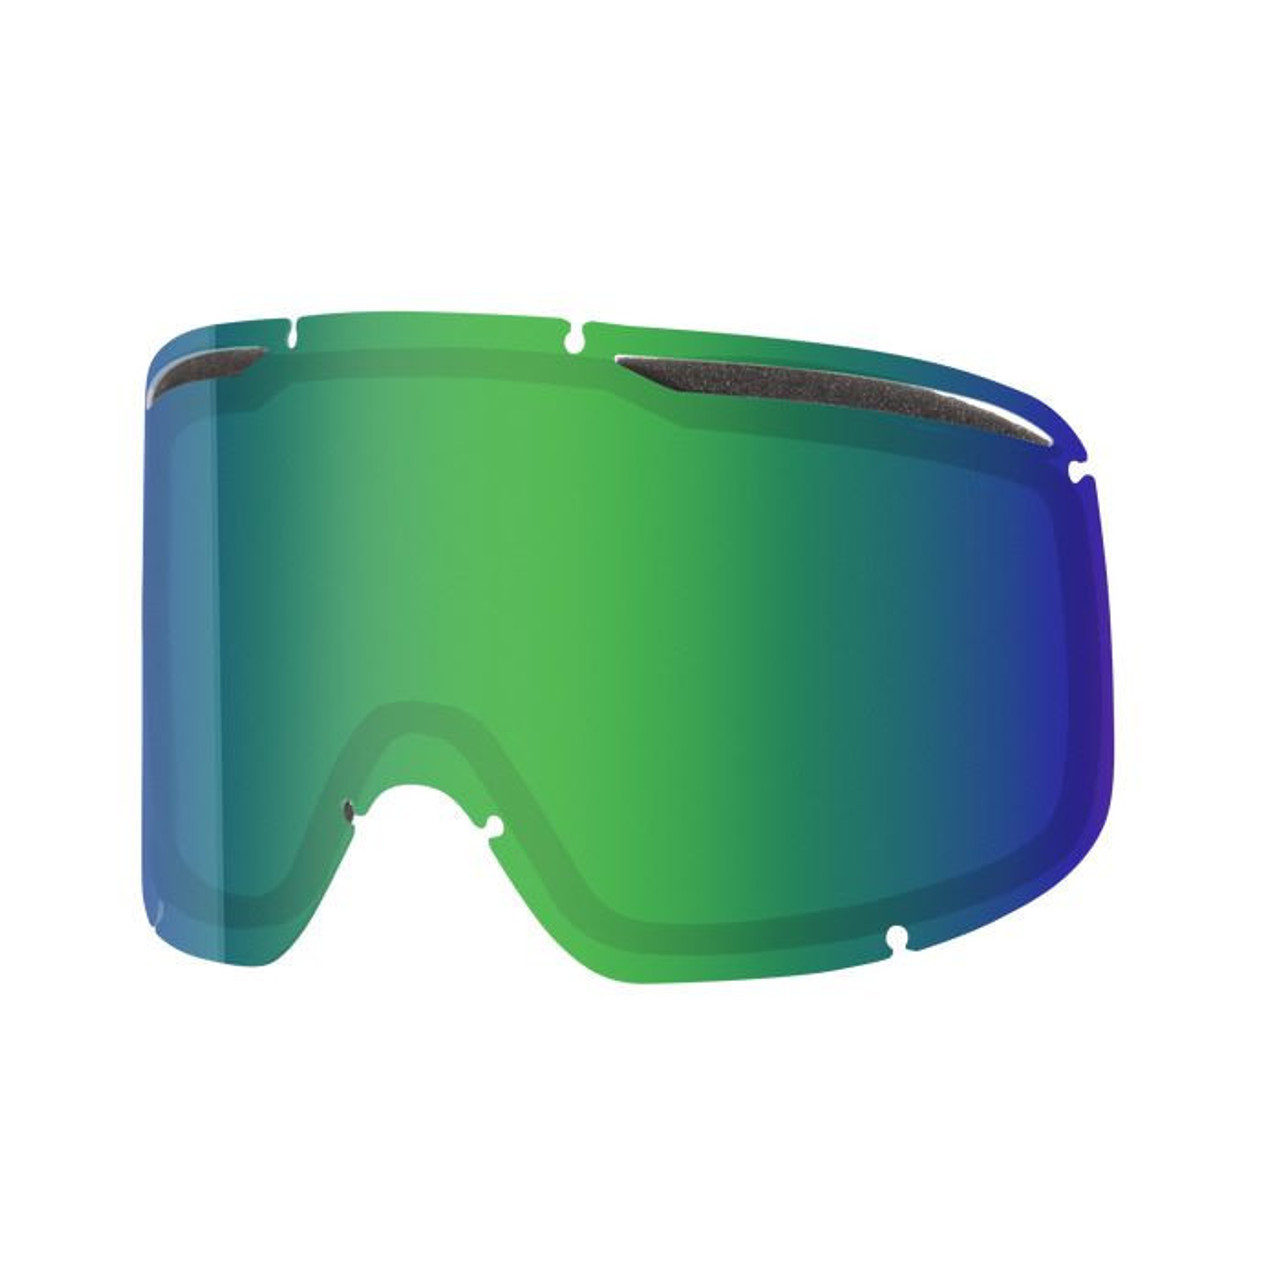 Smith Rally S1 (VLT 60%) - Gafas de esquí Mujer, Envío gratuito